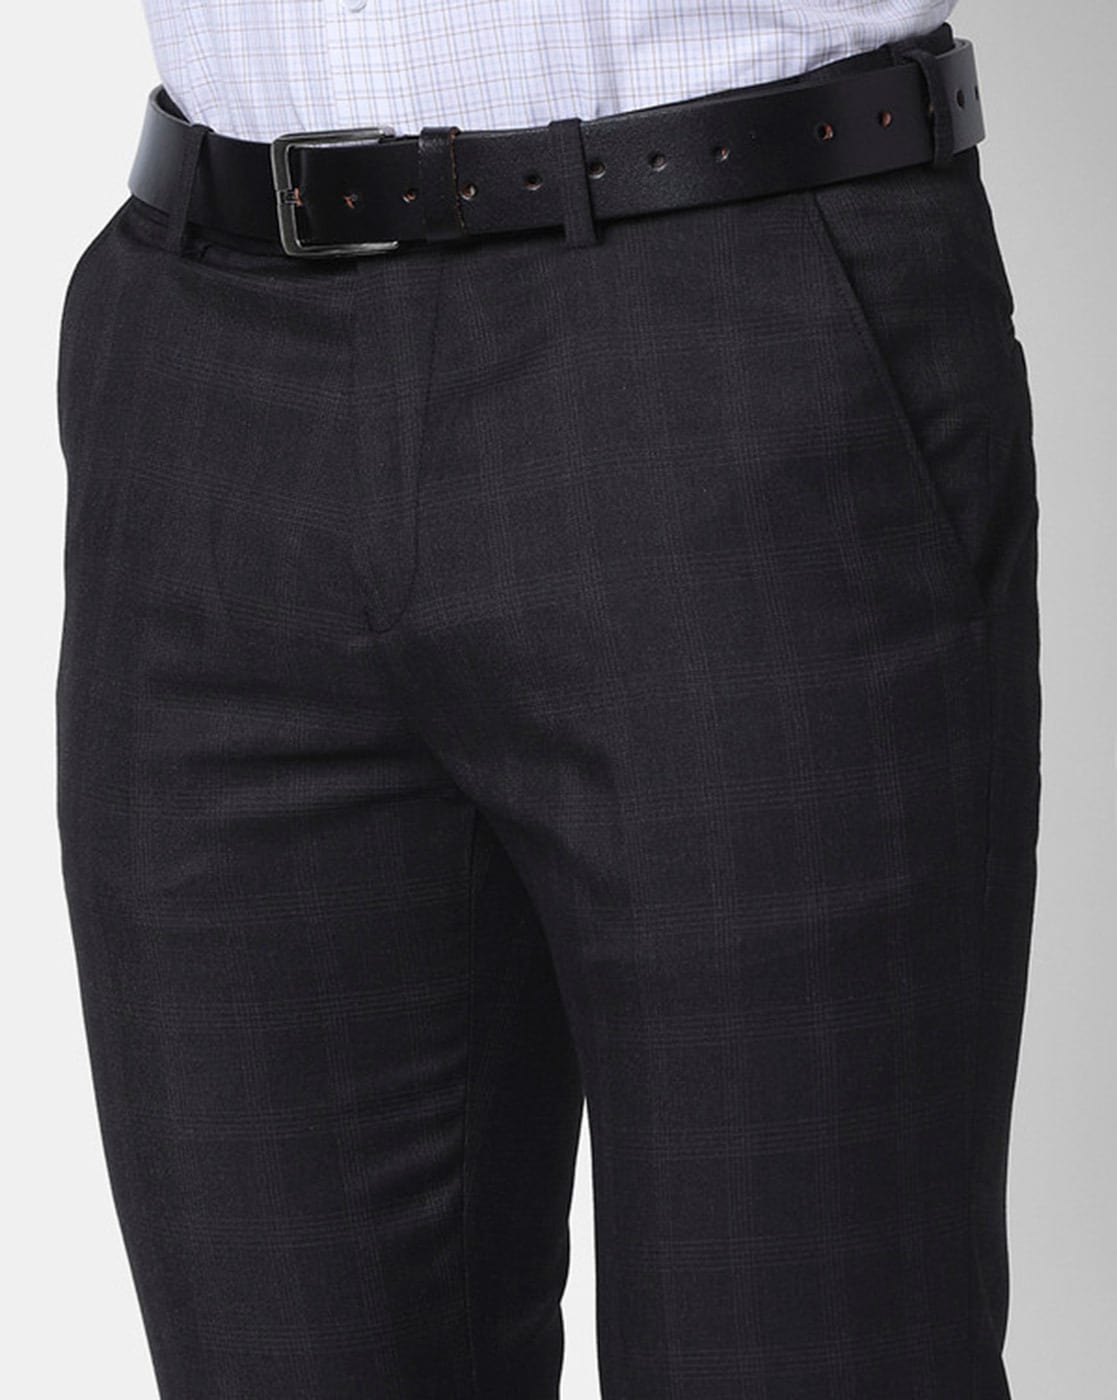 Lars Amadeus Men's Dress Plaid Pants Slim Fit Office Checked Trousers -  Walmart.com